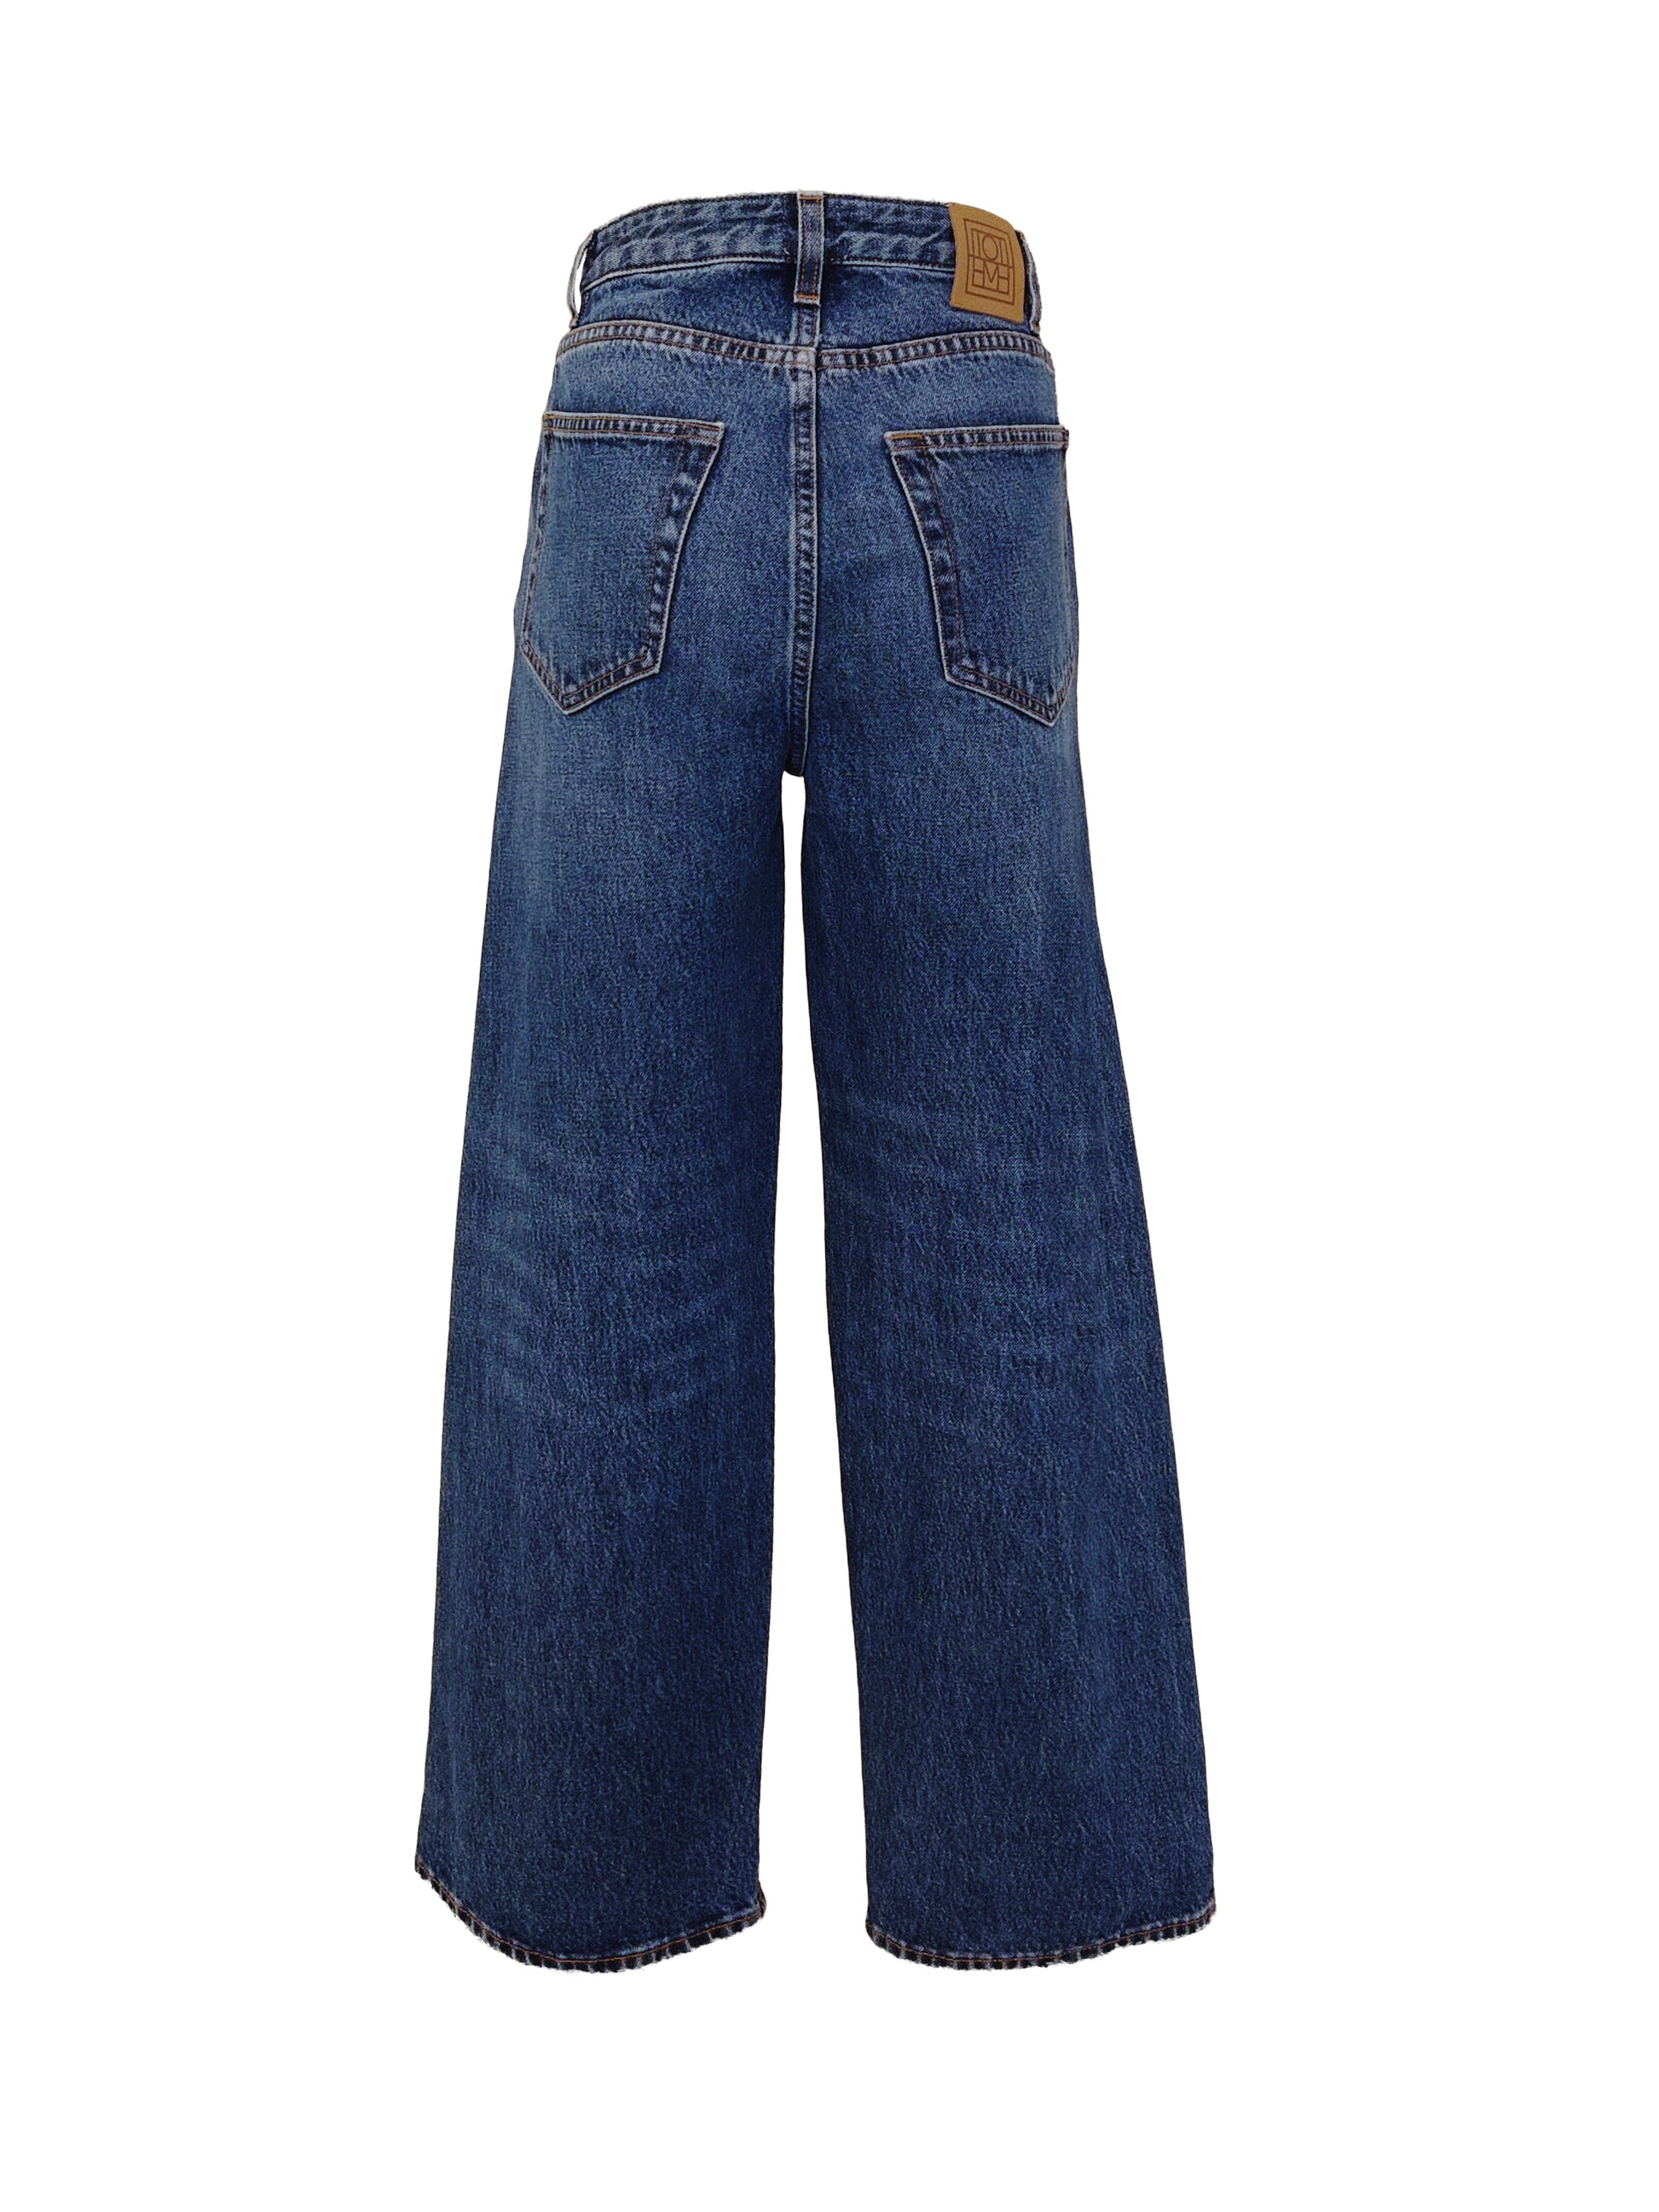 Mit einer sehr stylischen Waschung, sticht diese schicke Jeans von TOTEME trotz ihrem schlichten Design heraus. Der individuelle Charakter dieser Jeans wird ebenfalls besonders durch die Qualität und den weichen Jeansstoff betont.